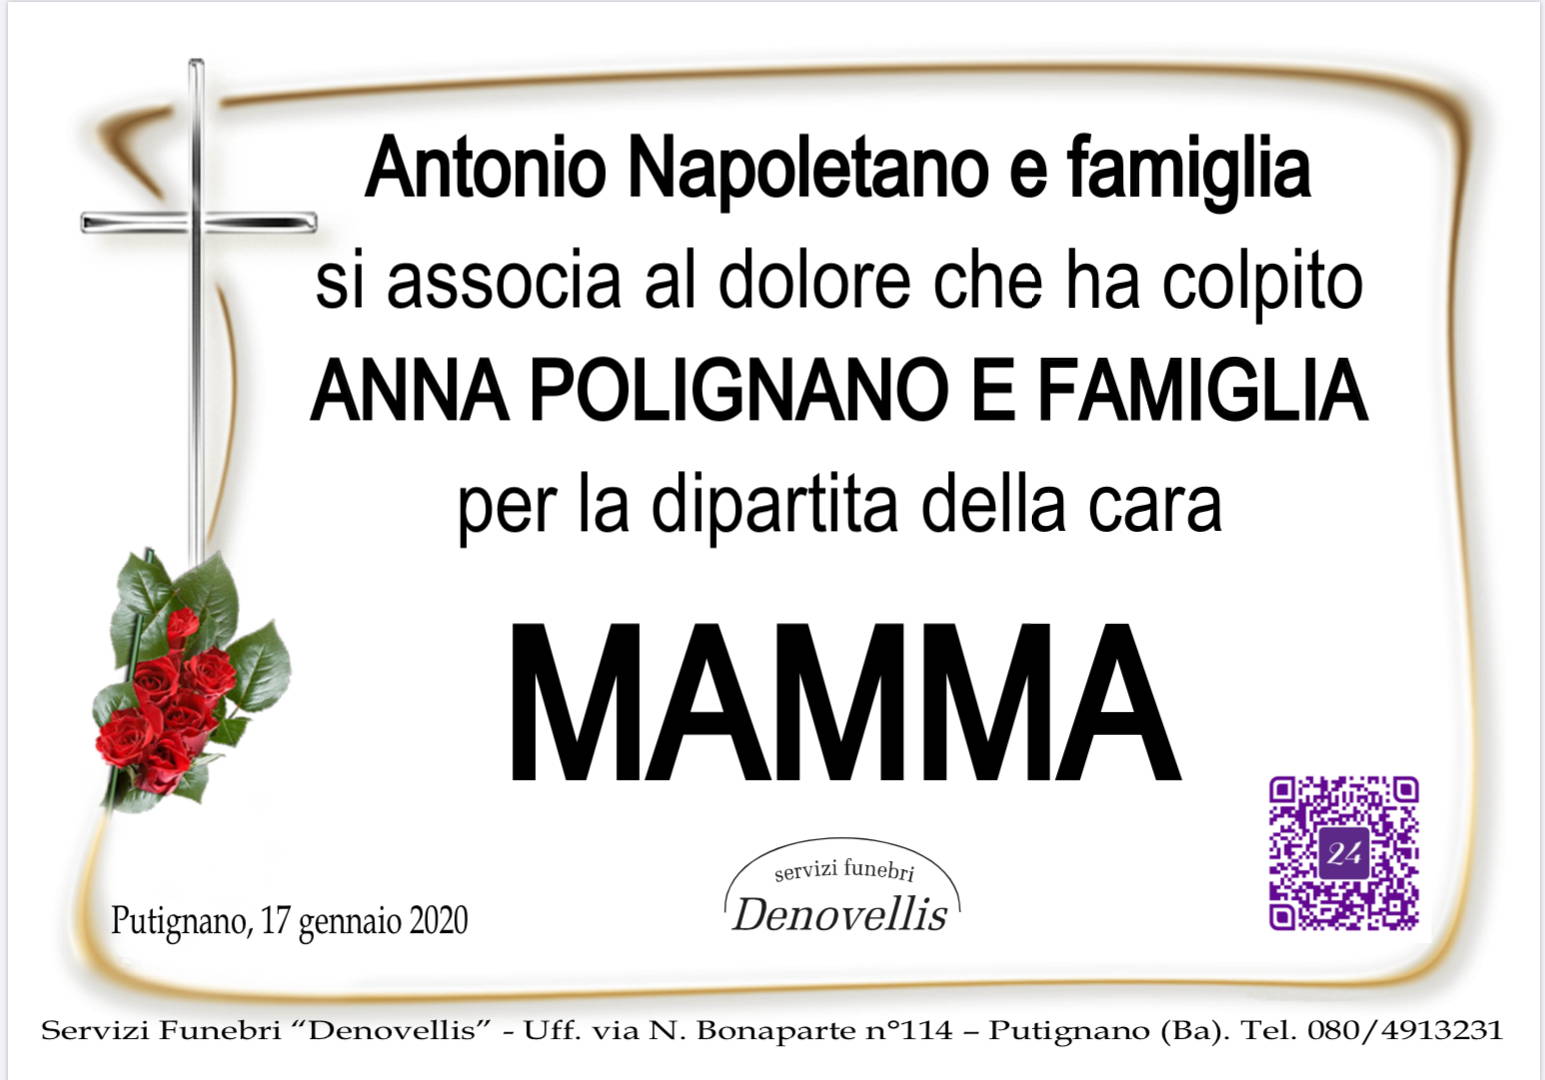 Antonio Napoletano e Famiglia